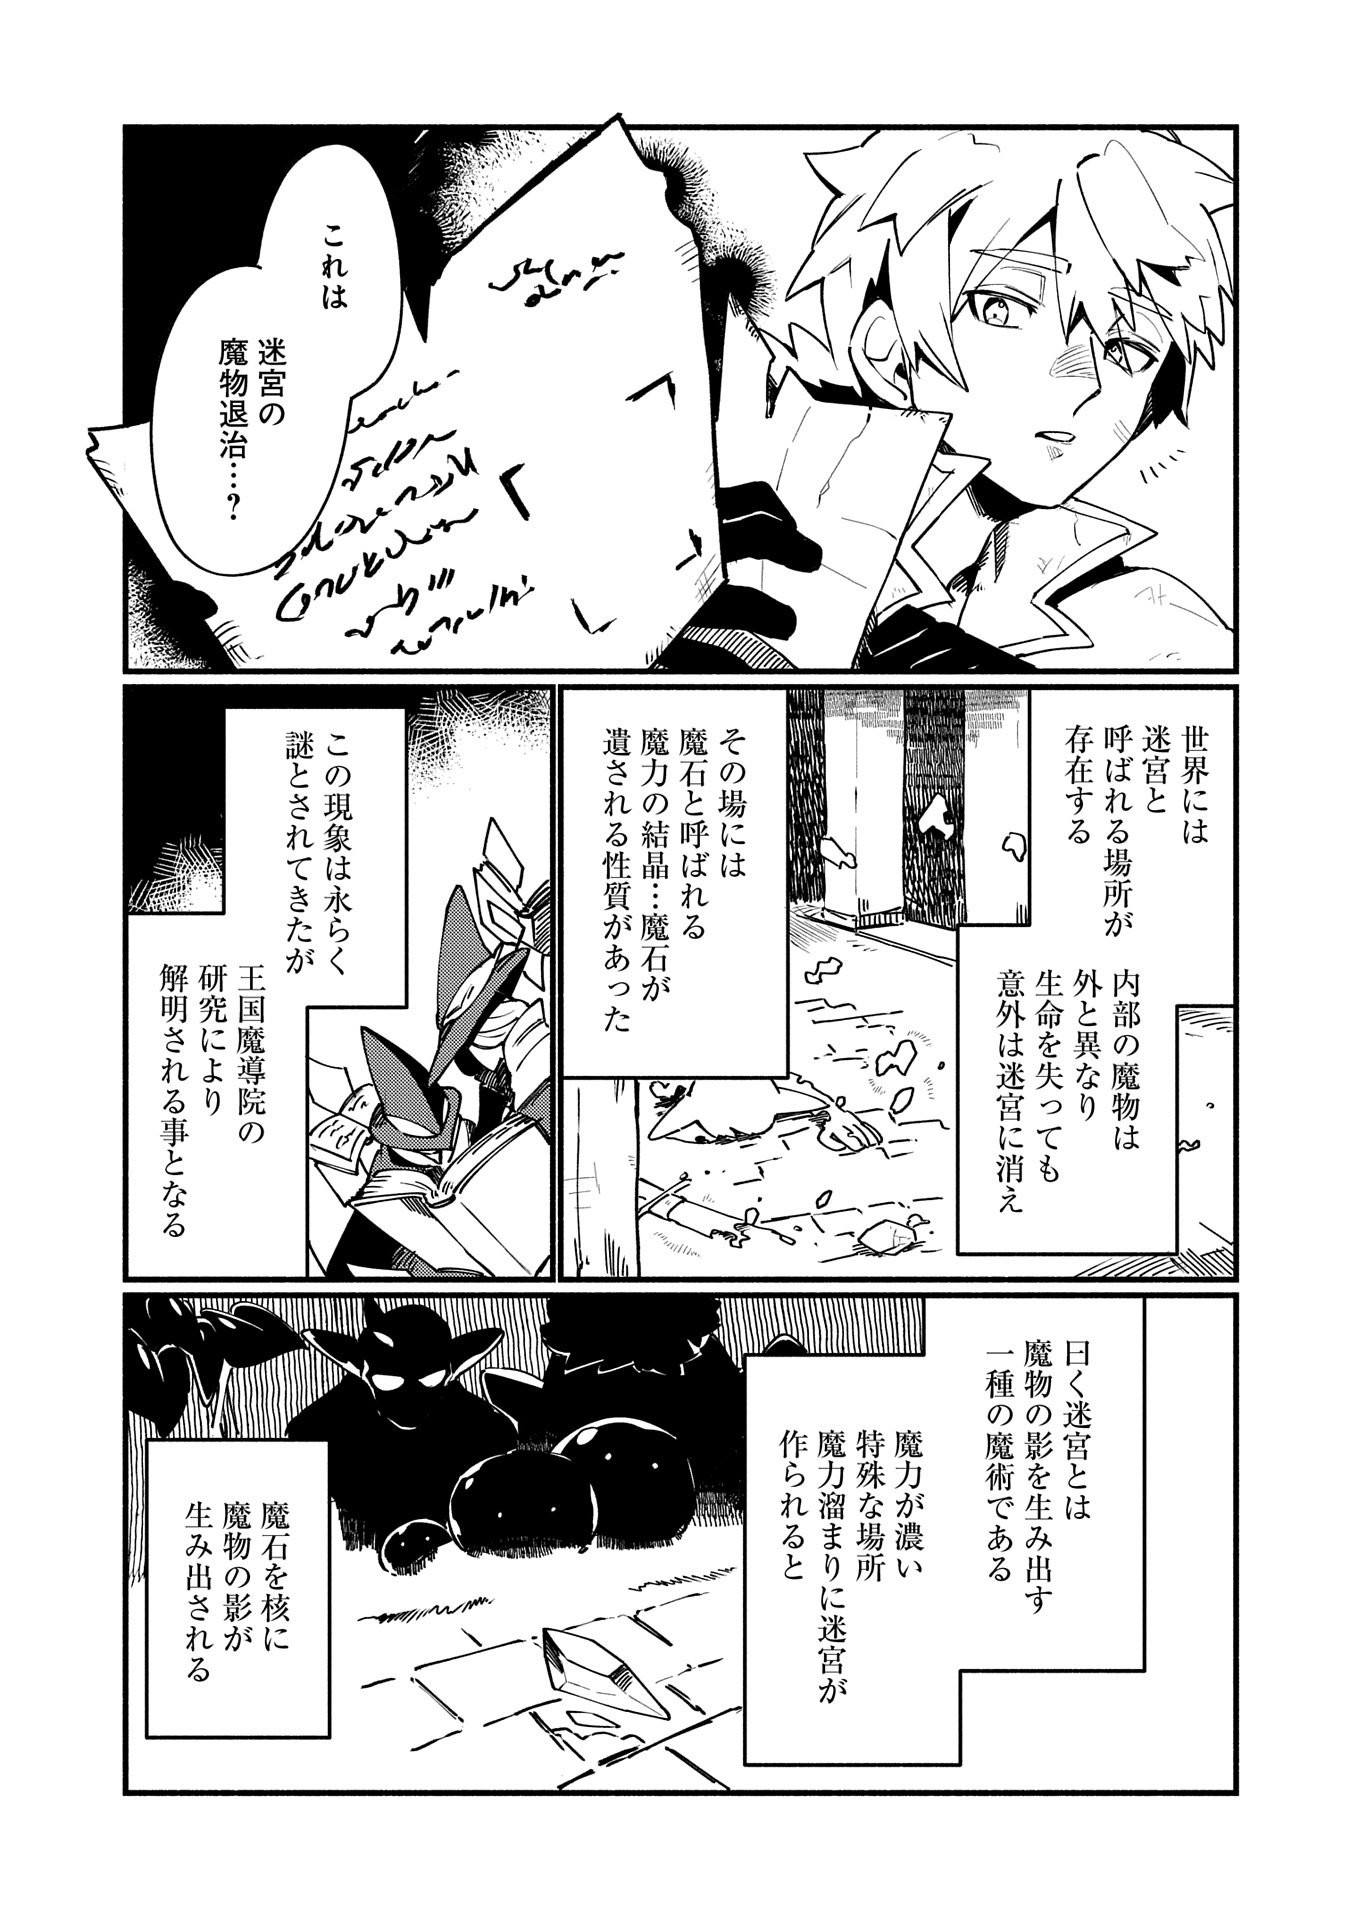 貧乏貴族ノードの冒険譚 第1話 - Page 25